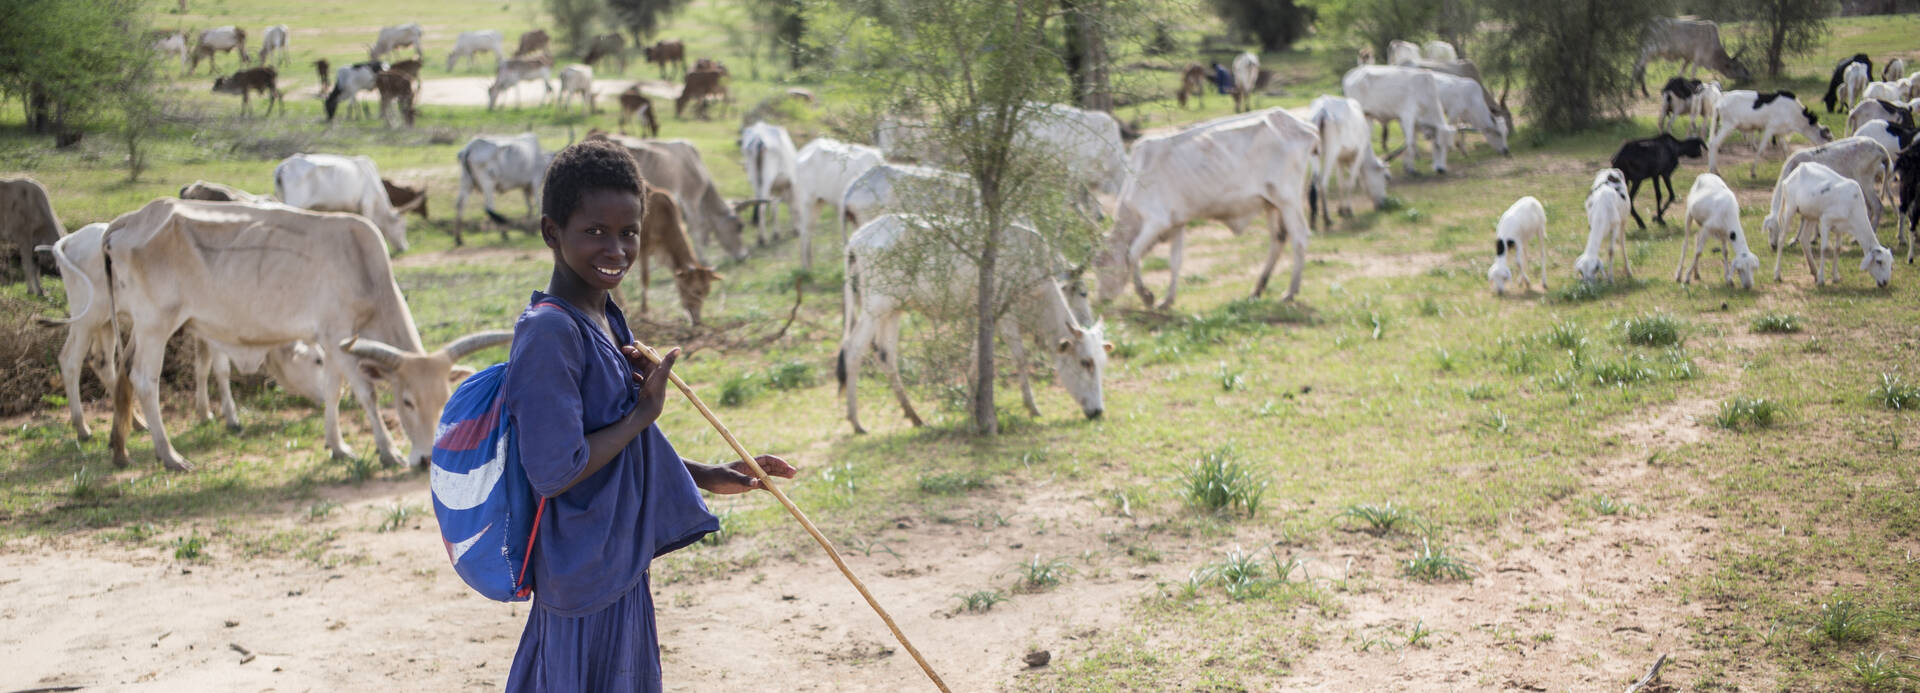 Junge in Mauretanien hütet Rinder.